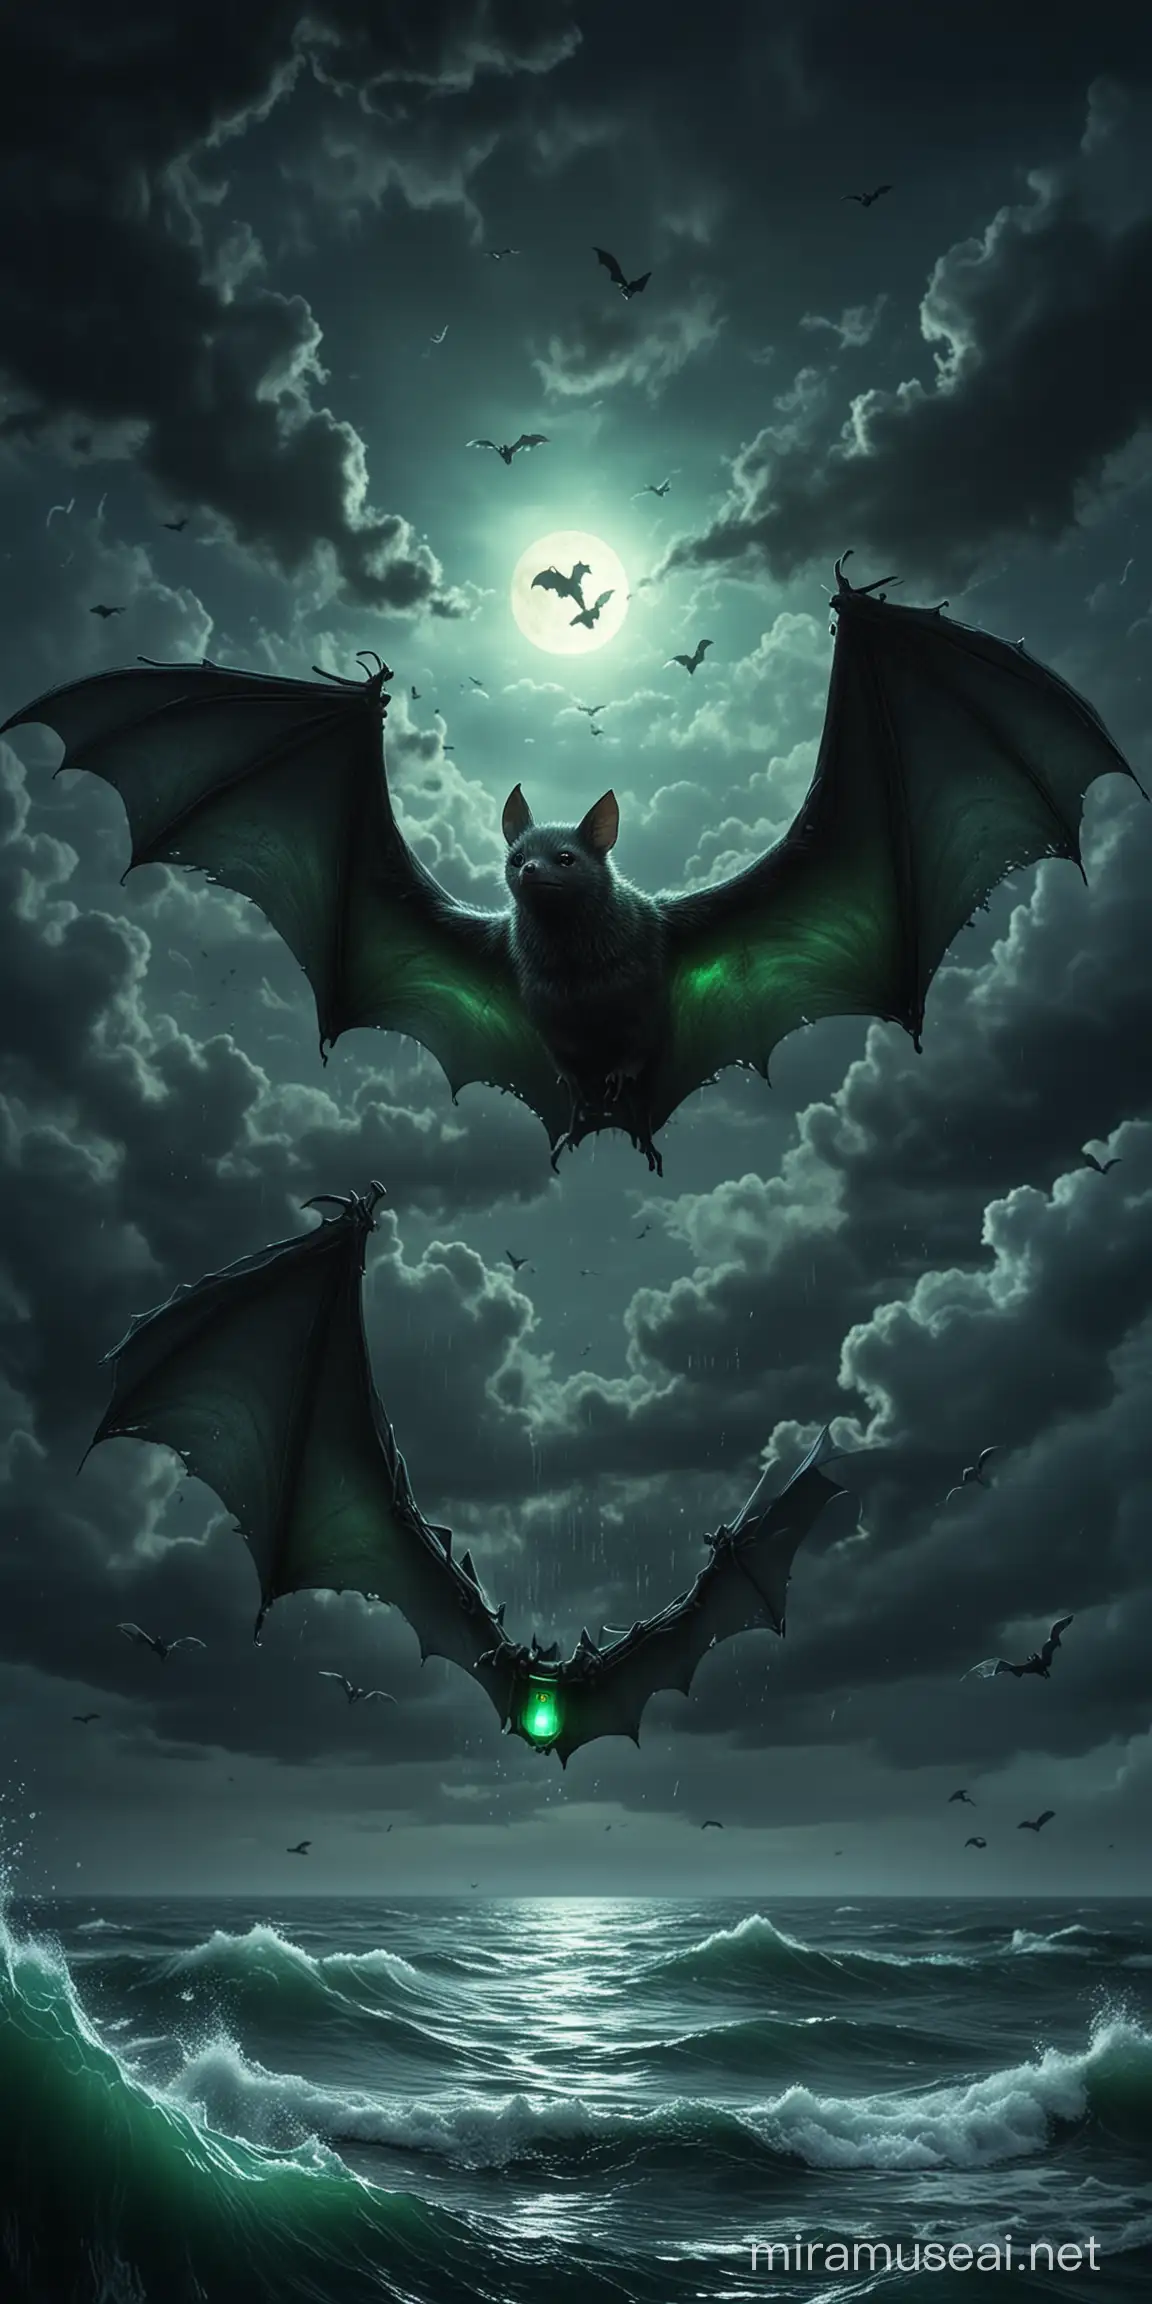 лапки летучей мыши держат зеленый светящийся жетон над темно-синим штормовым морем, реалистично, мрачная атмосфера, мистика